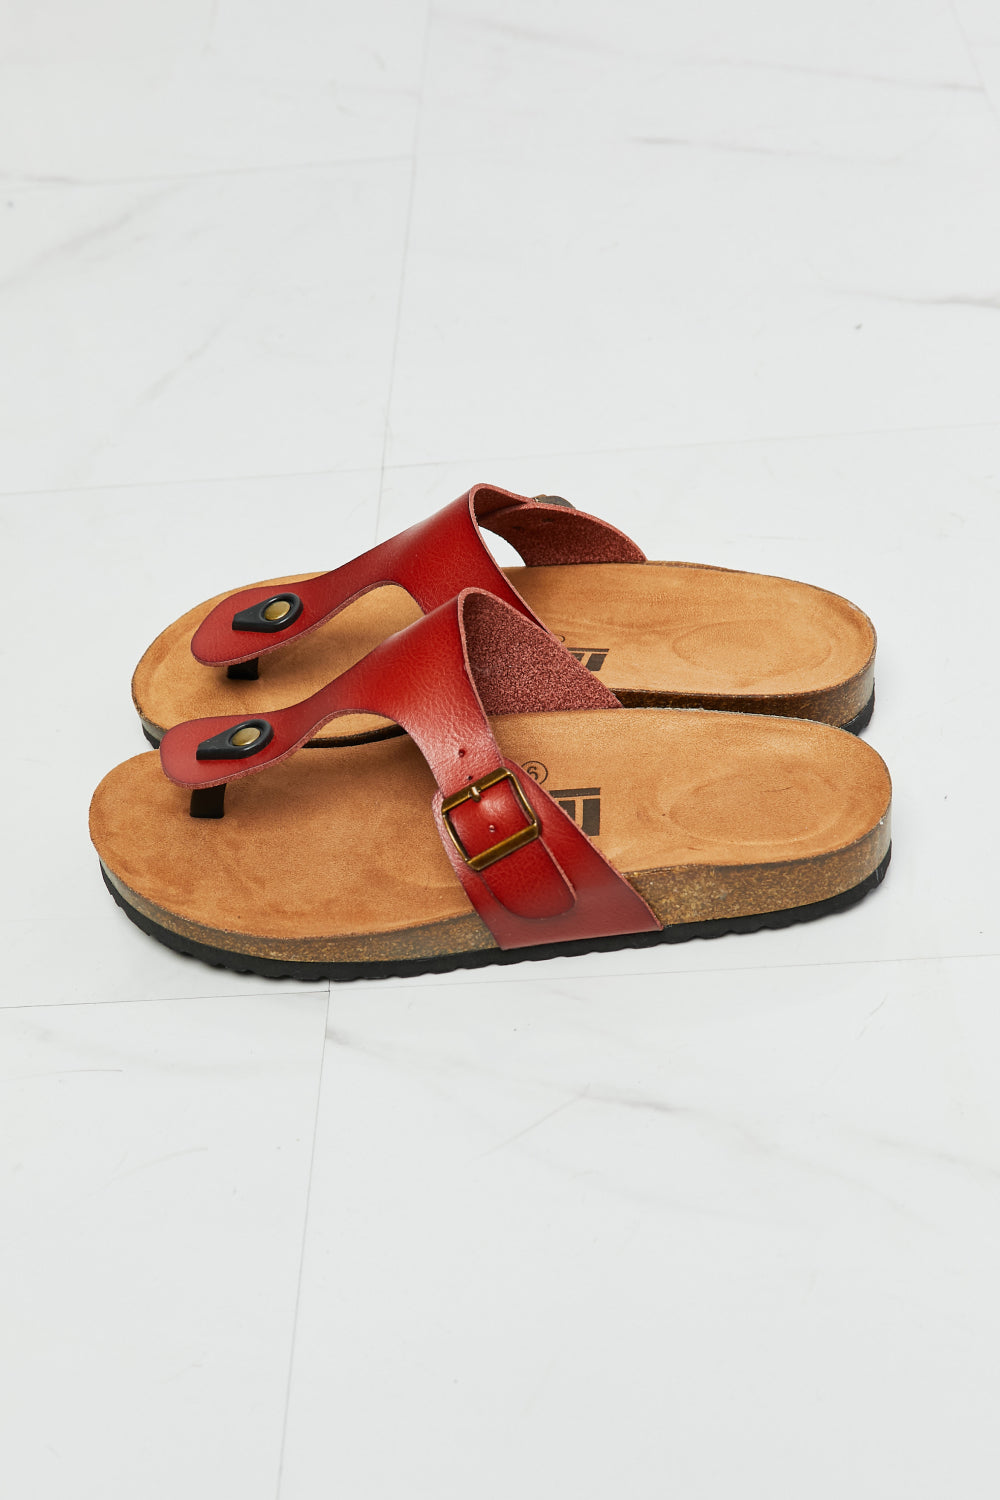 MMShoes T-Strap Flip-Flop Slide On Flat Cork Footbed Comfort Sandals in Deep Red Drift Away